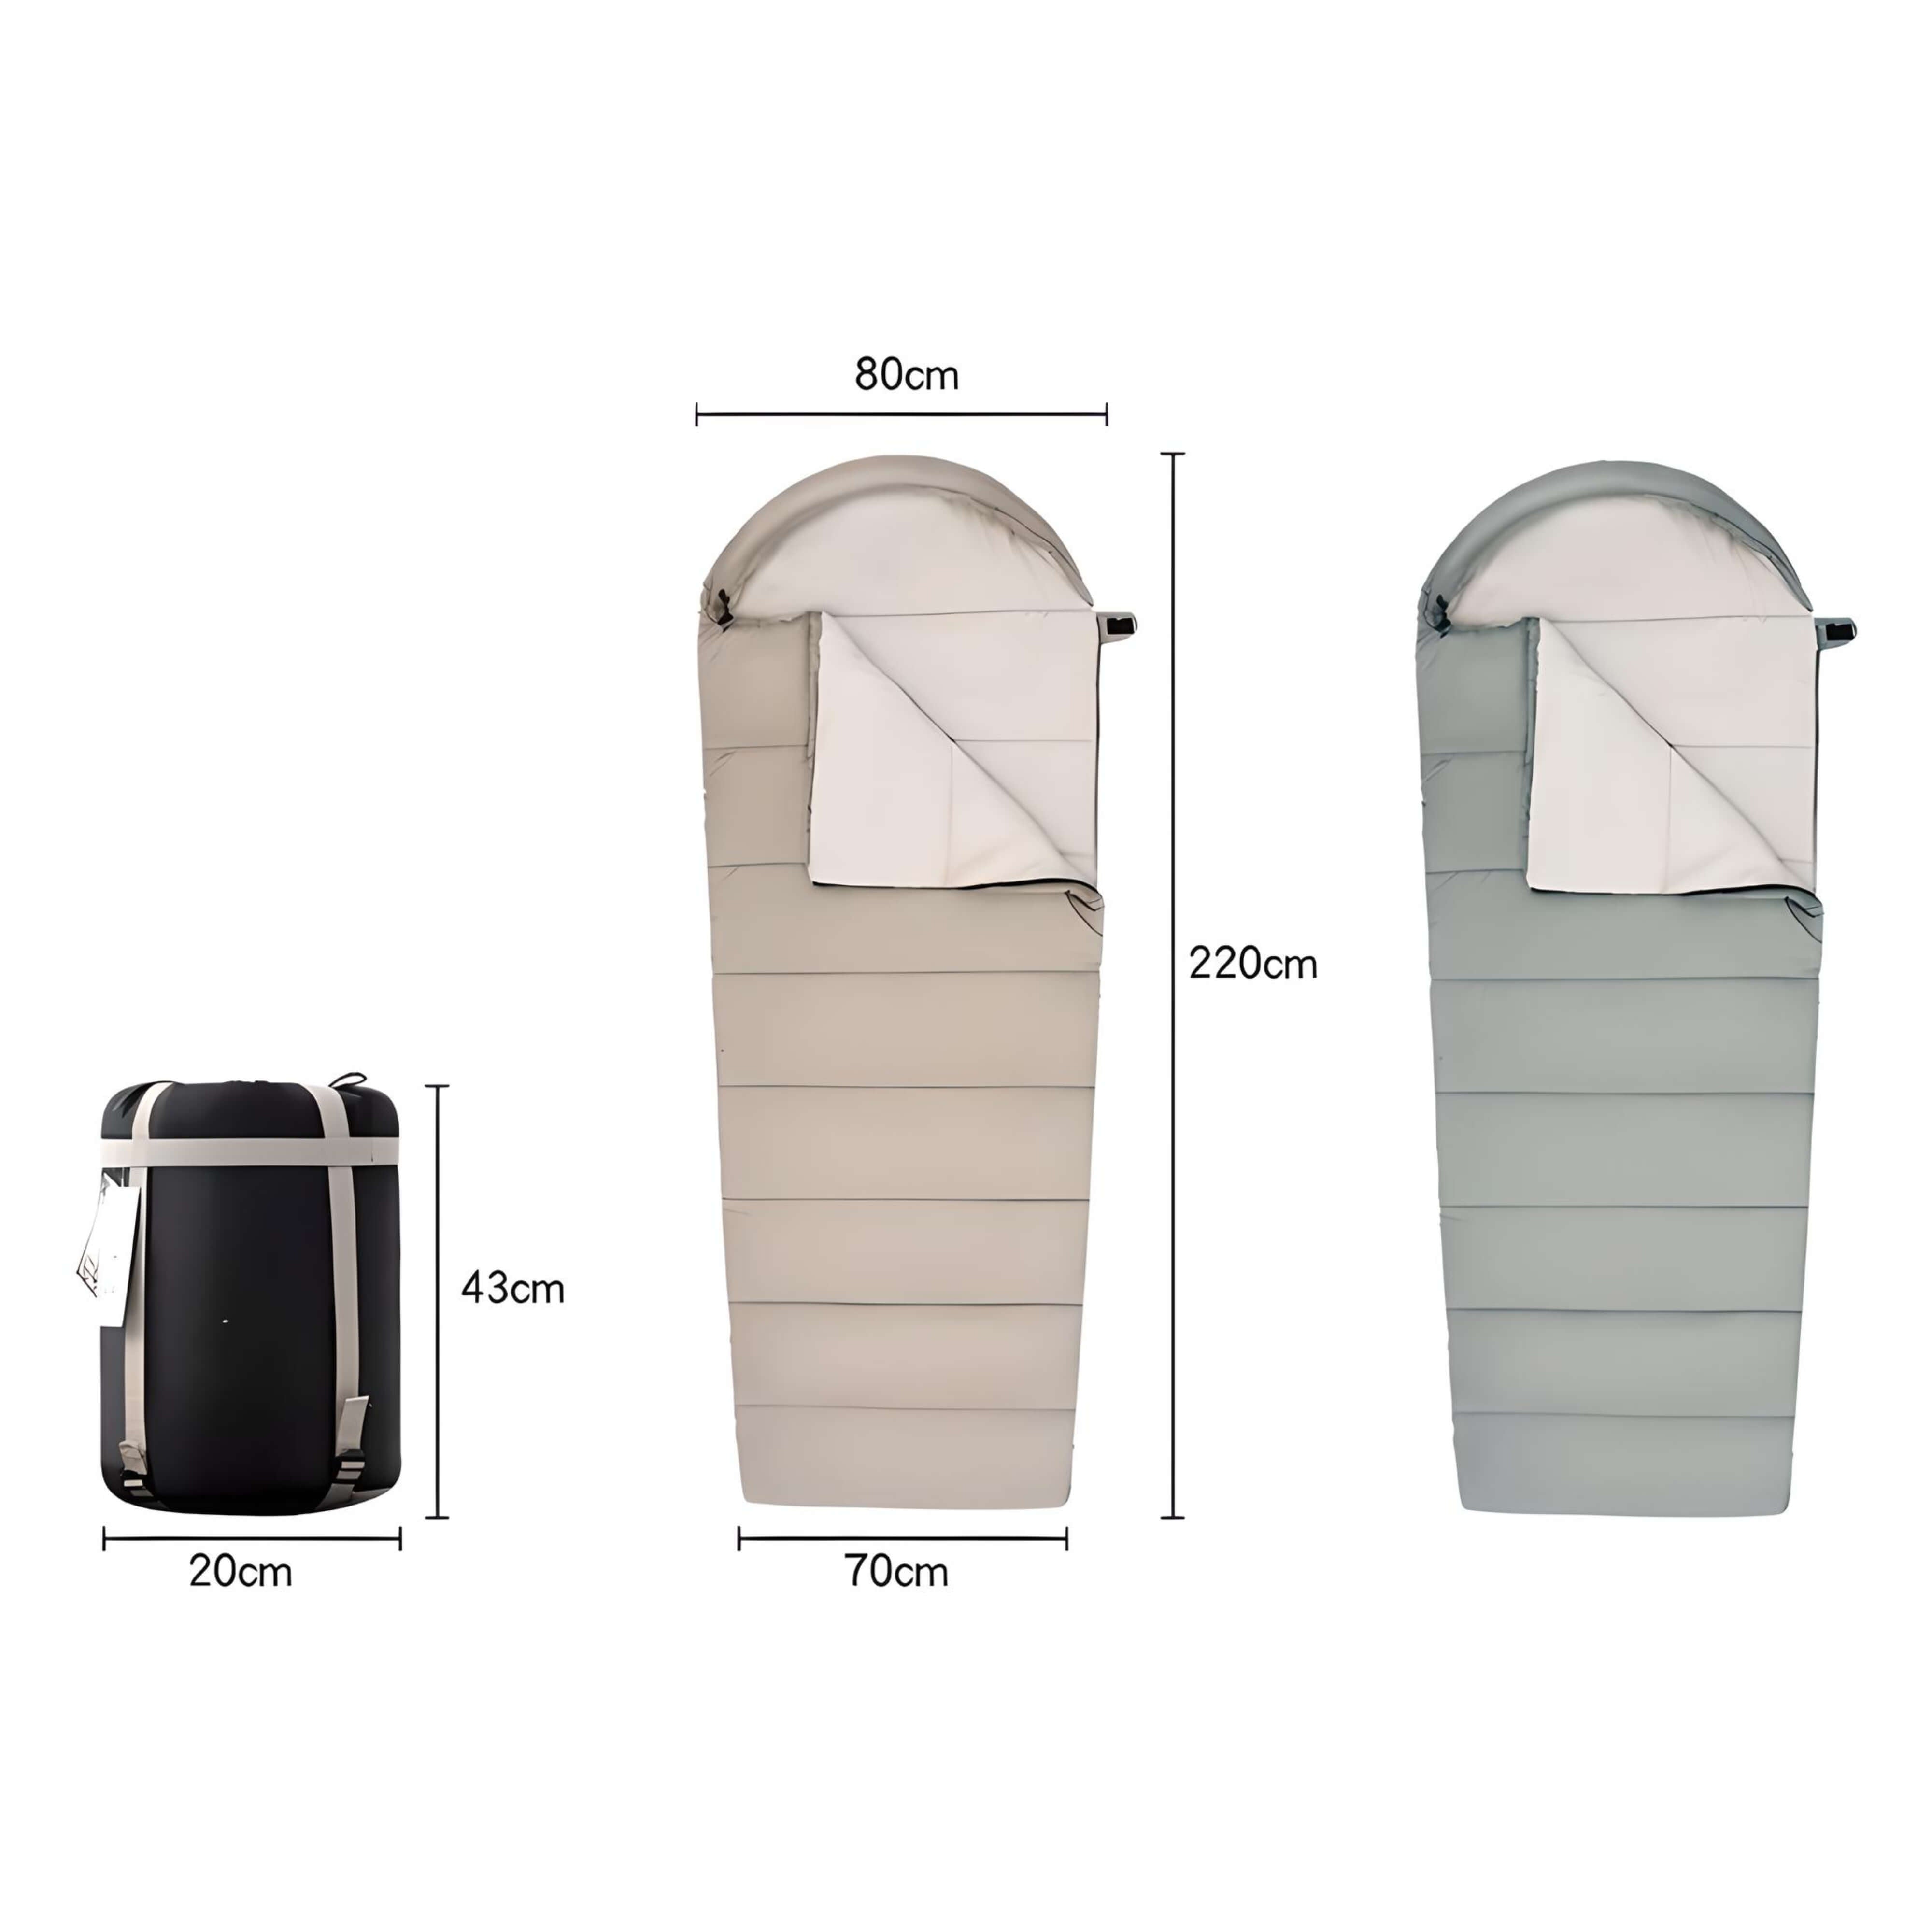 water-proof-sleeping-bag-dimension-details